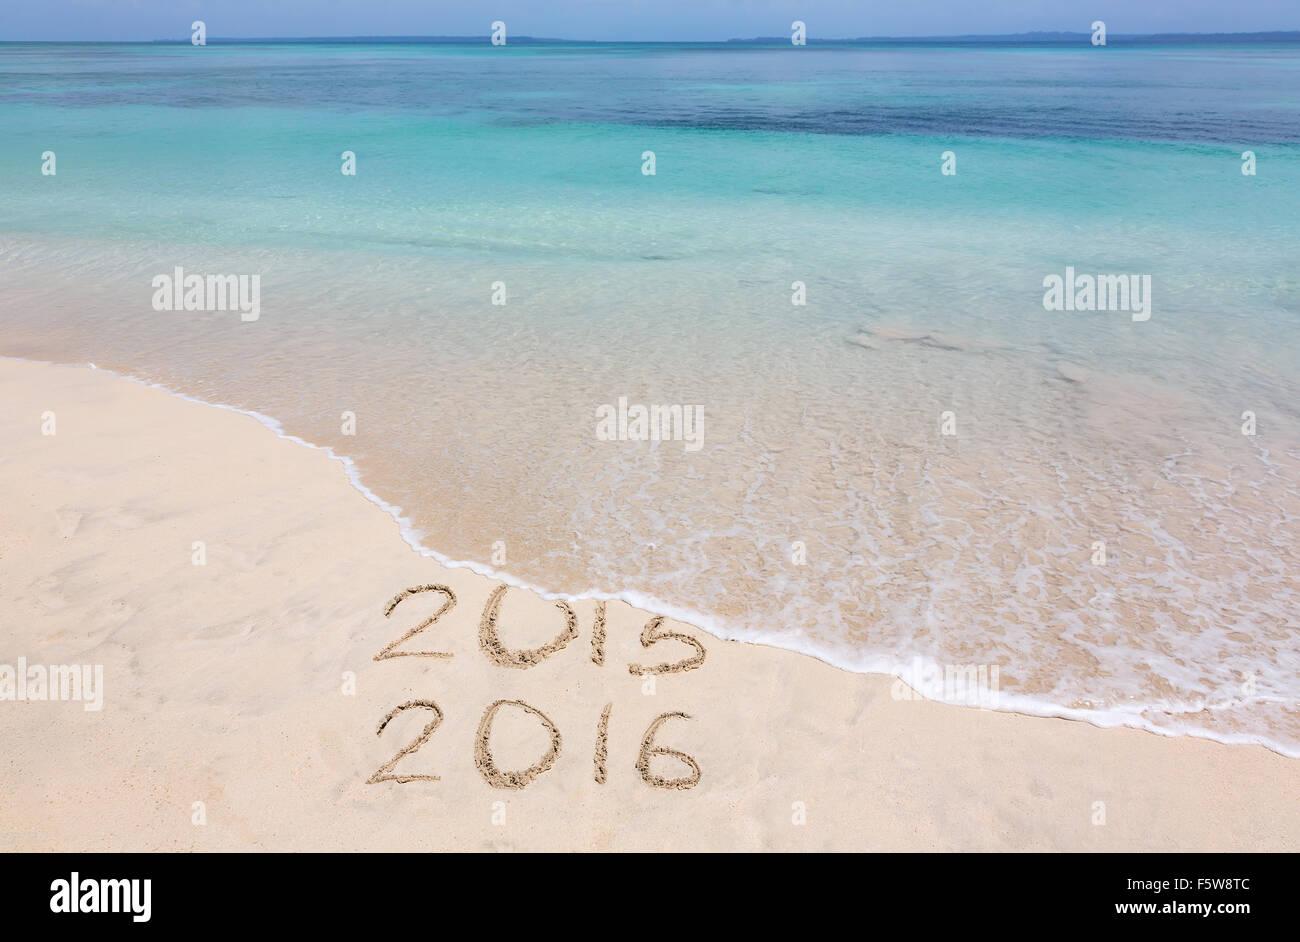 Jahr 2015 wird vom Ozeanwelle weggespült Stockfoto